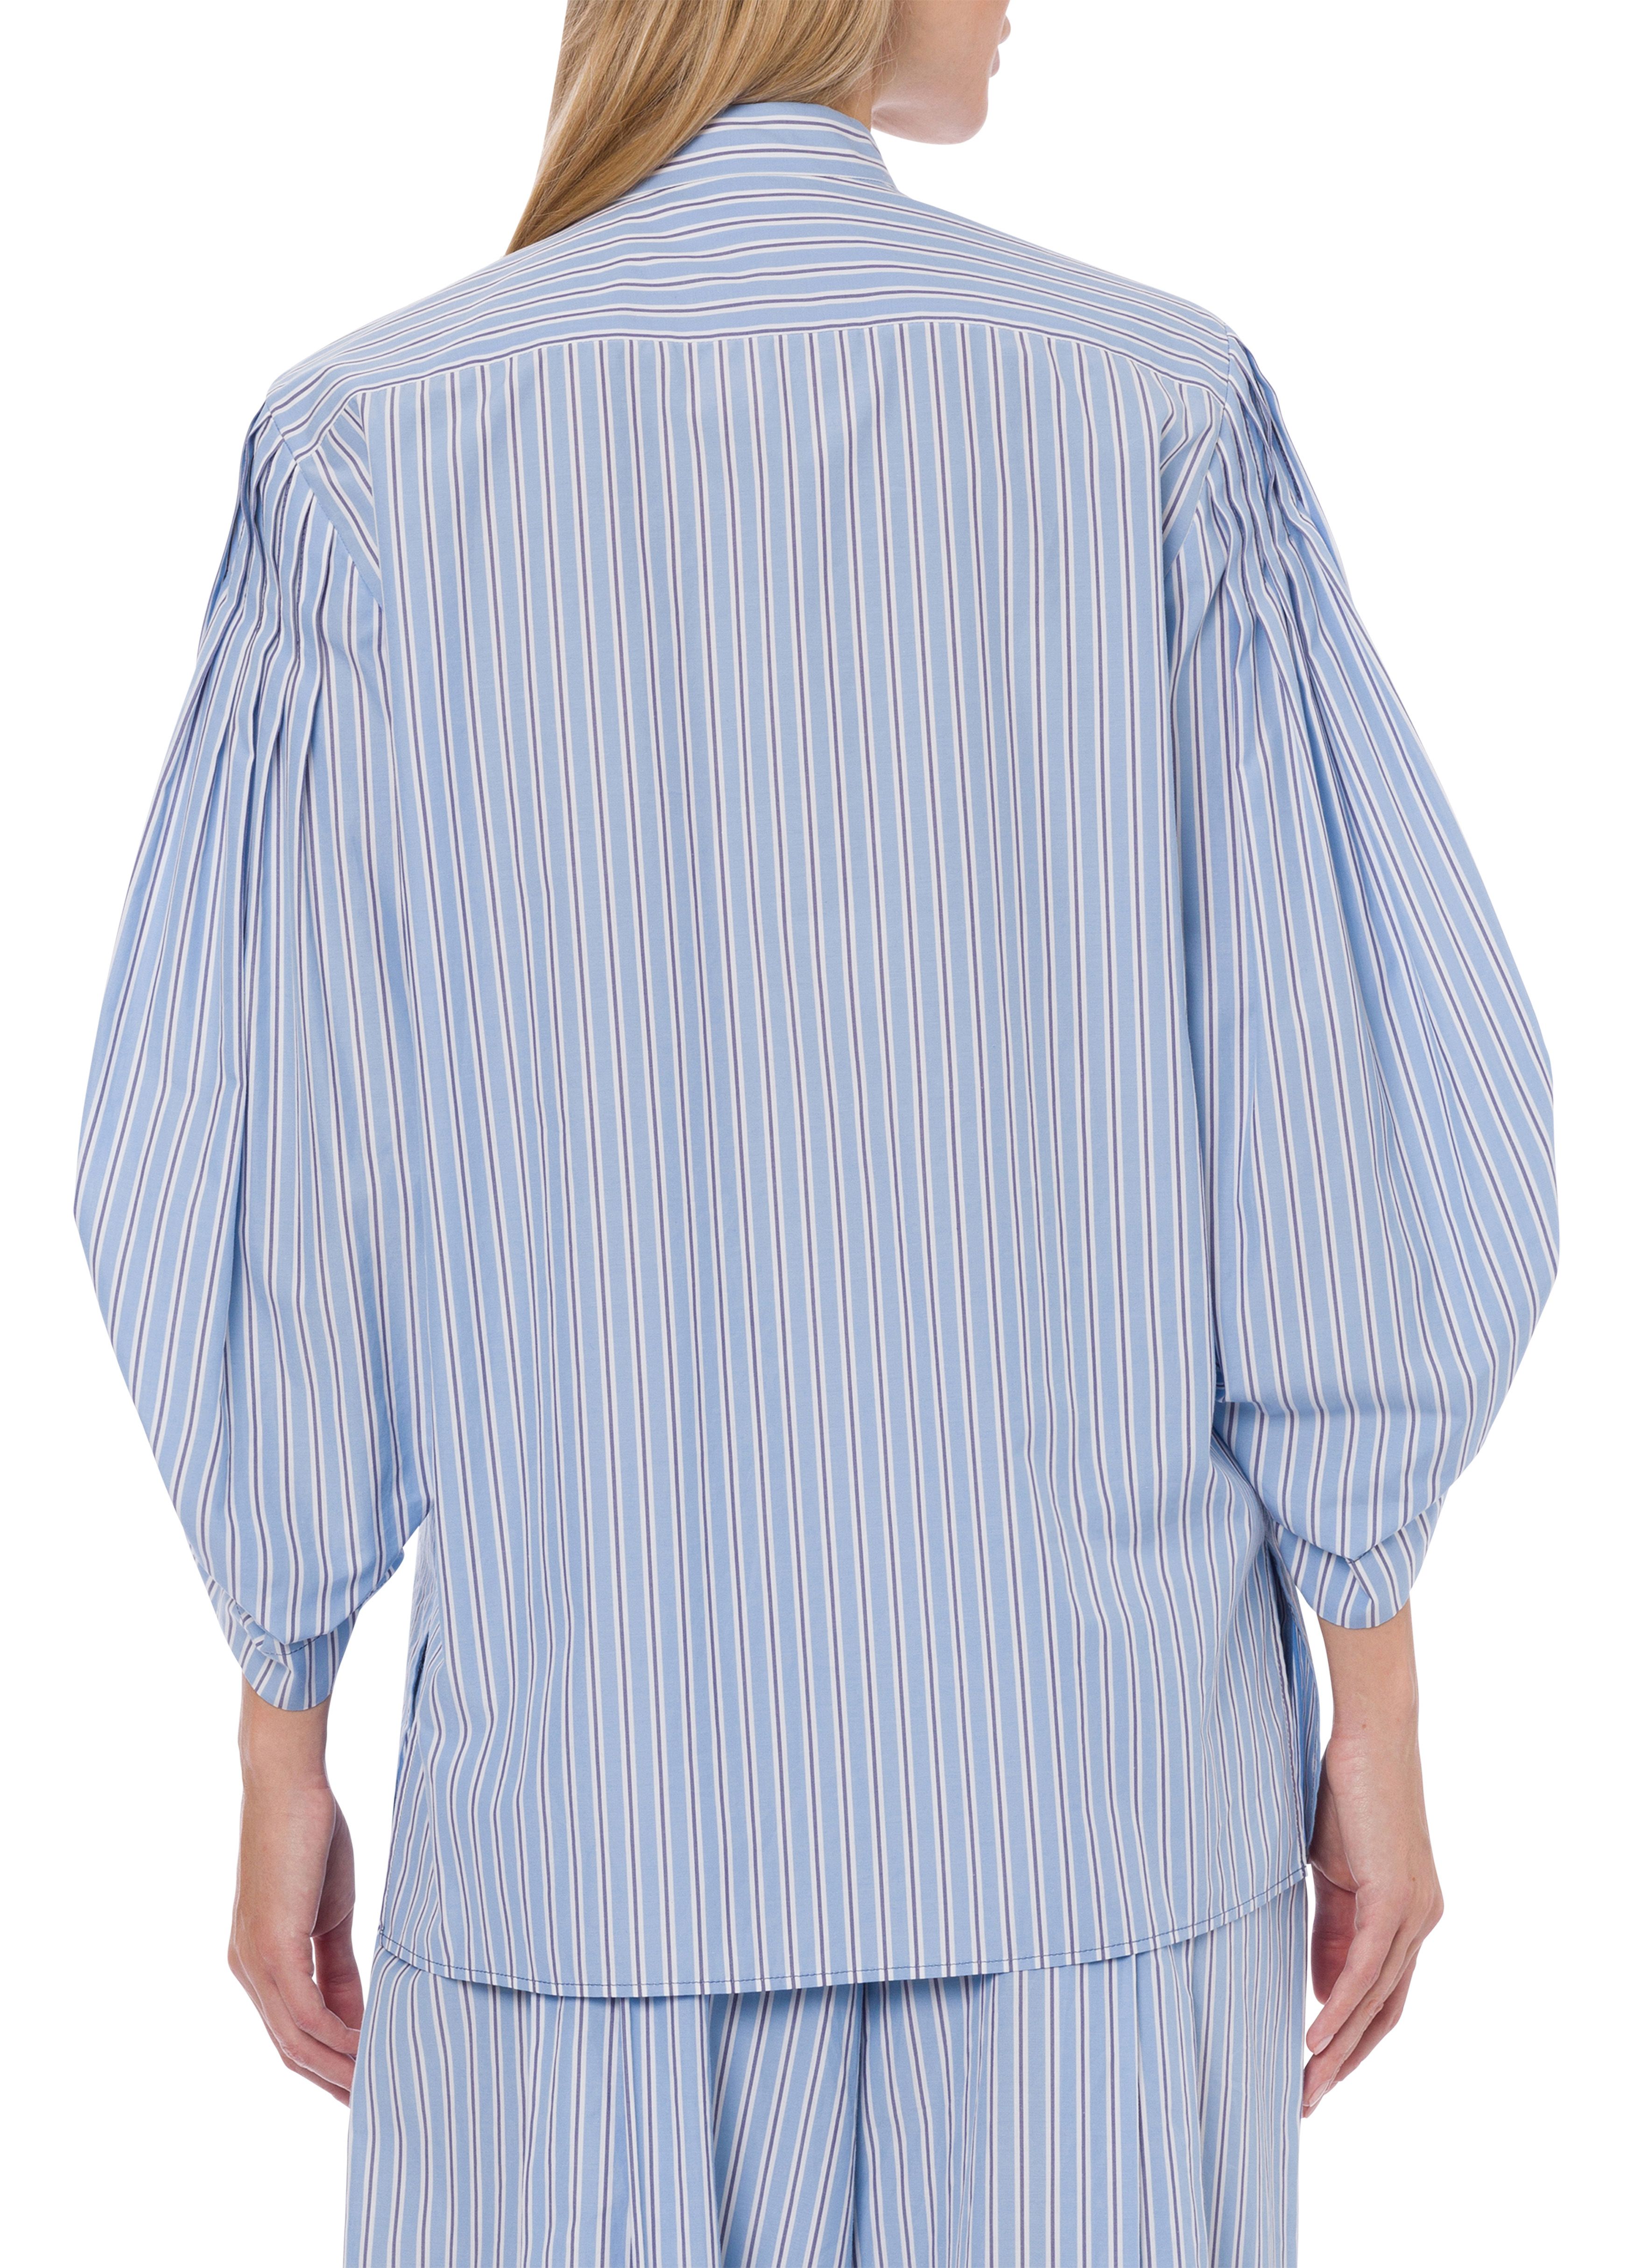 Alberta Ferretti Shirt in striped poplin